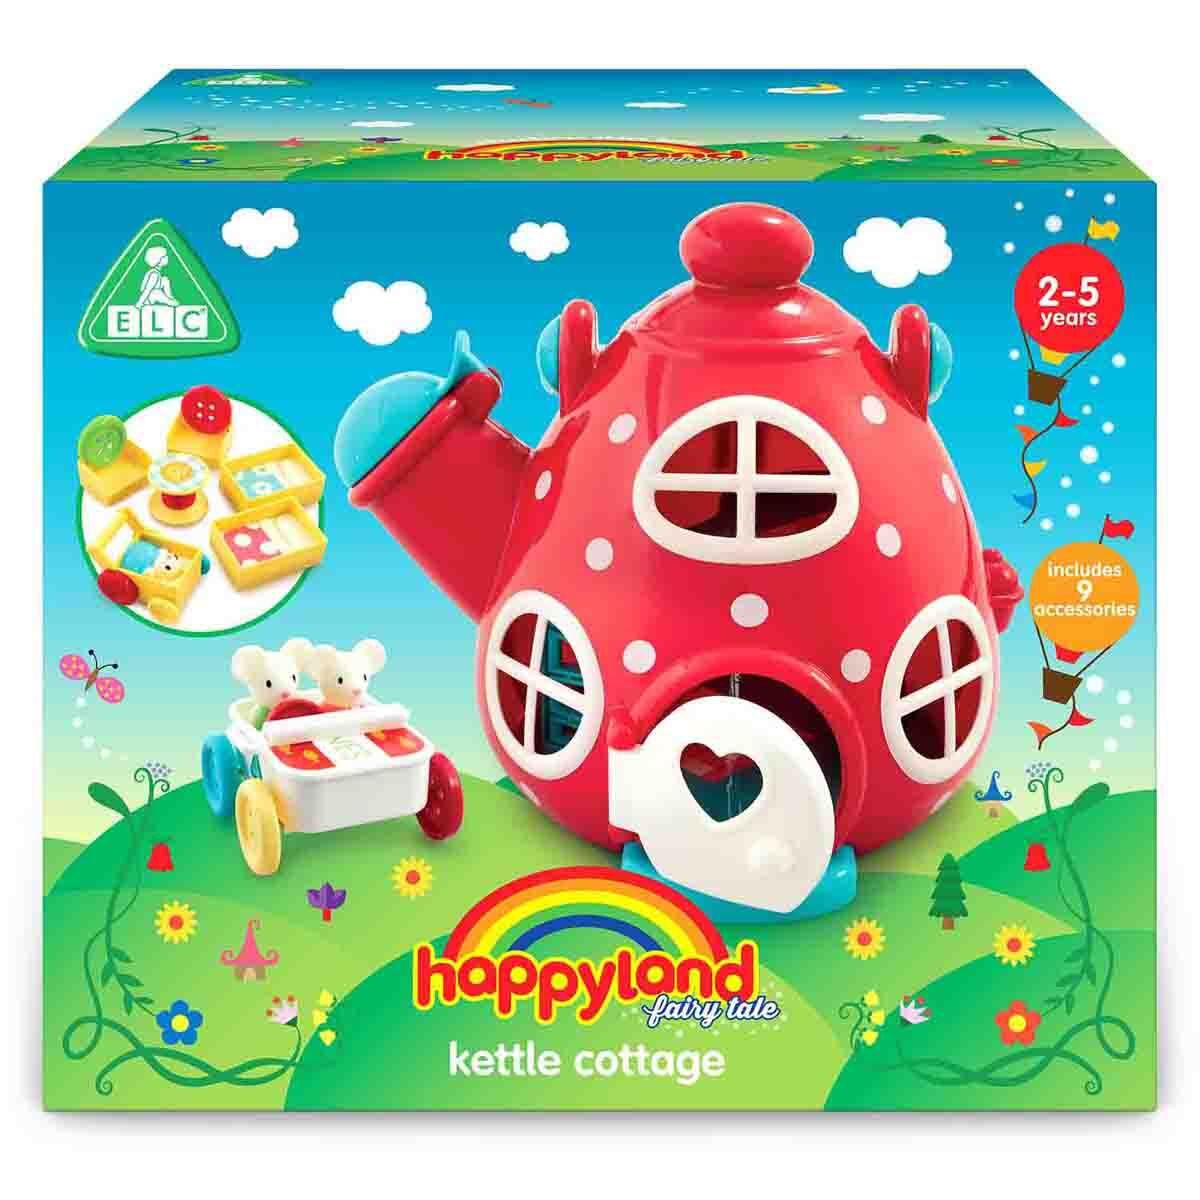 Happyland Kettle Cottage Playset